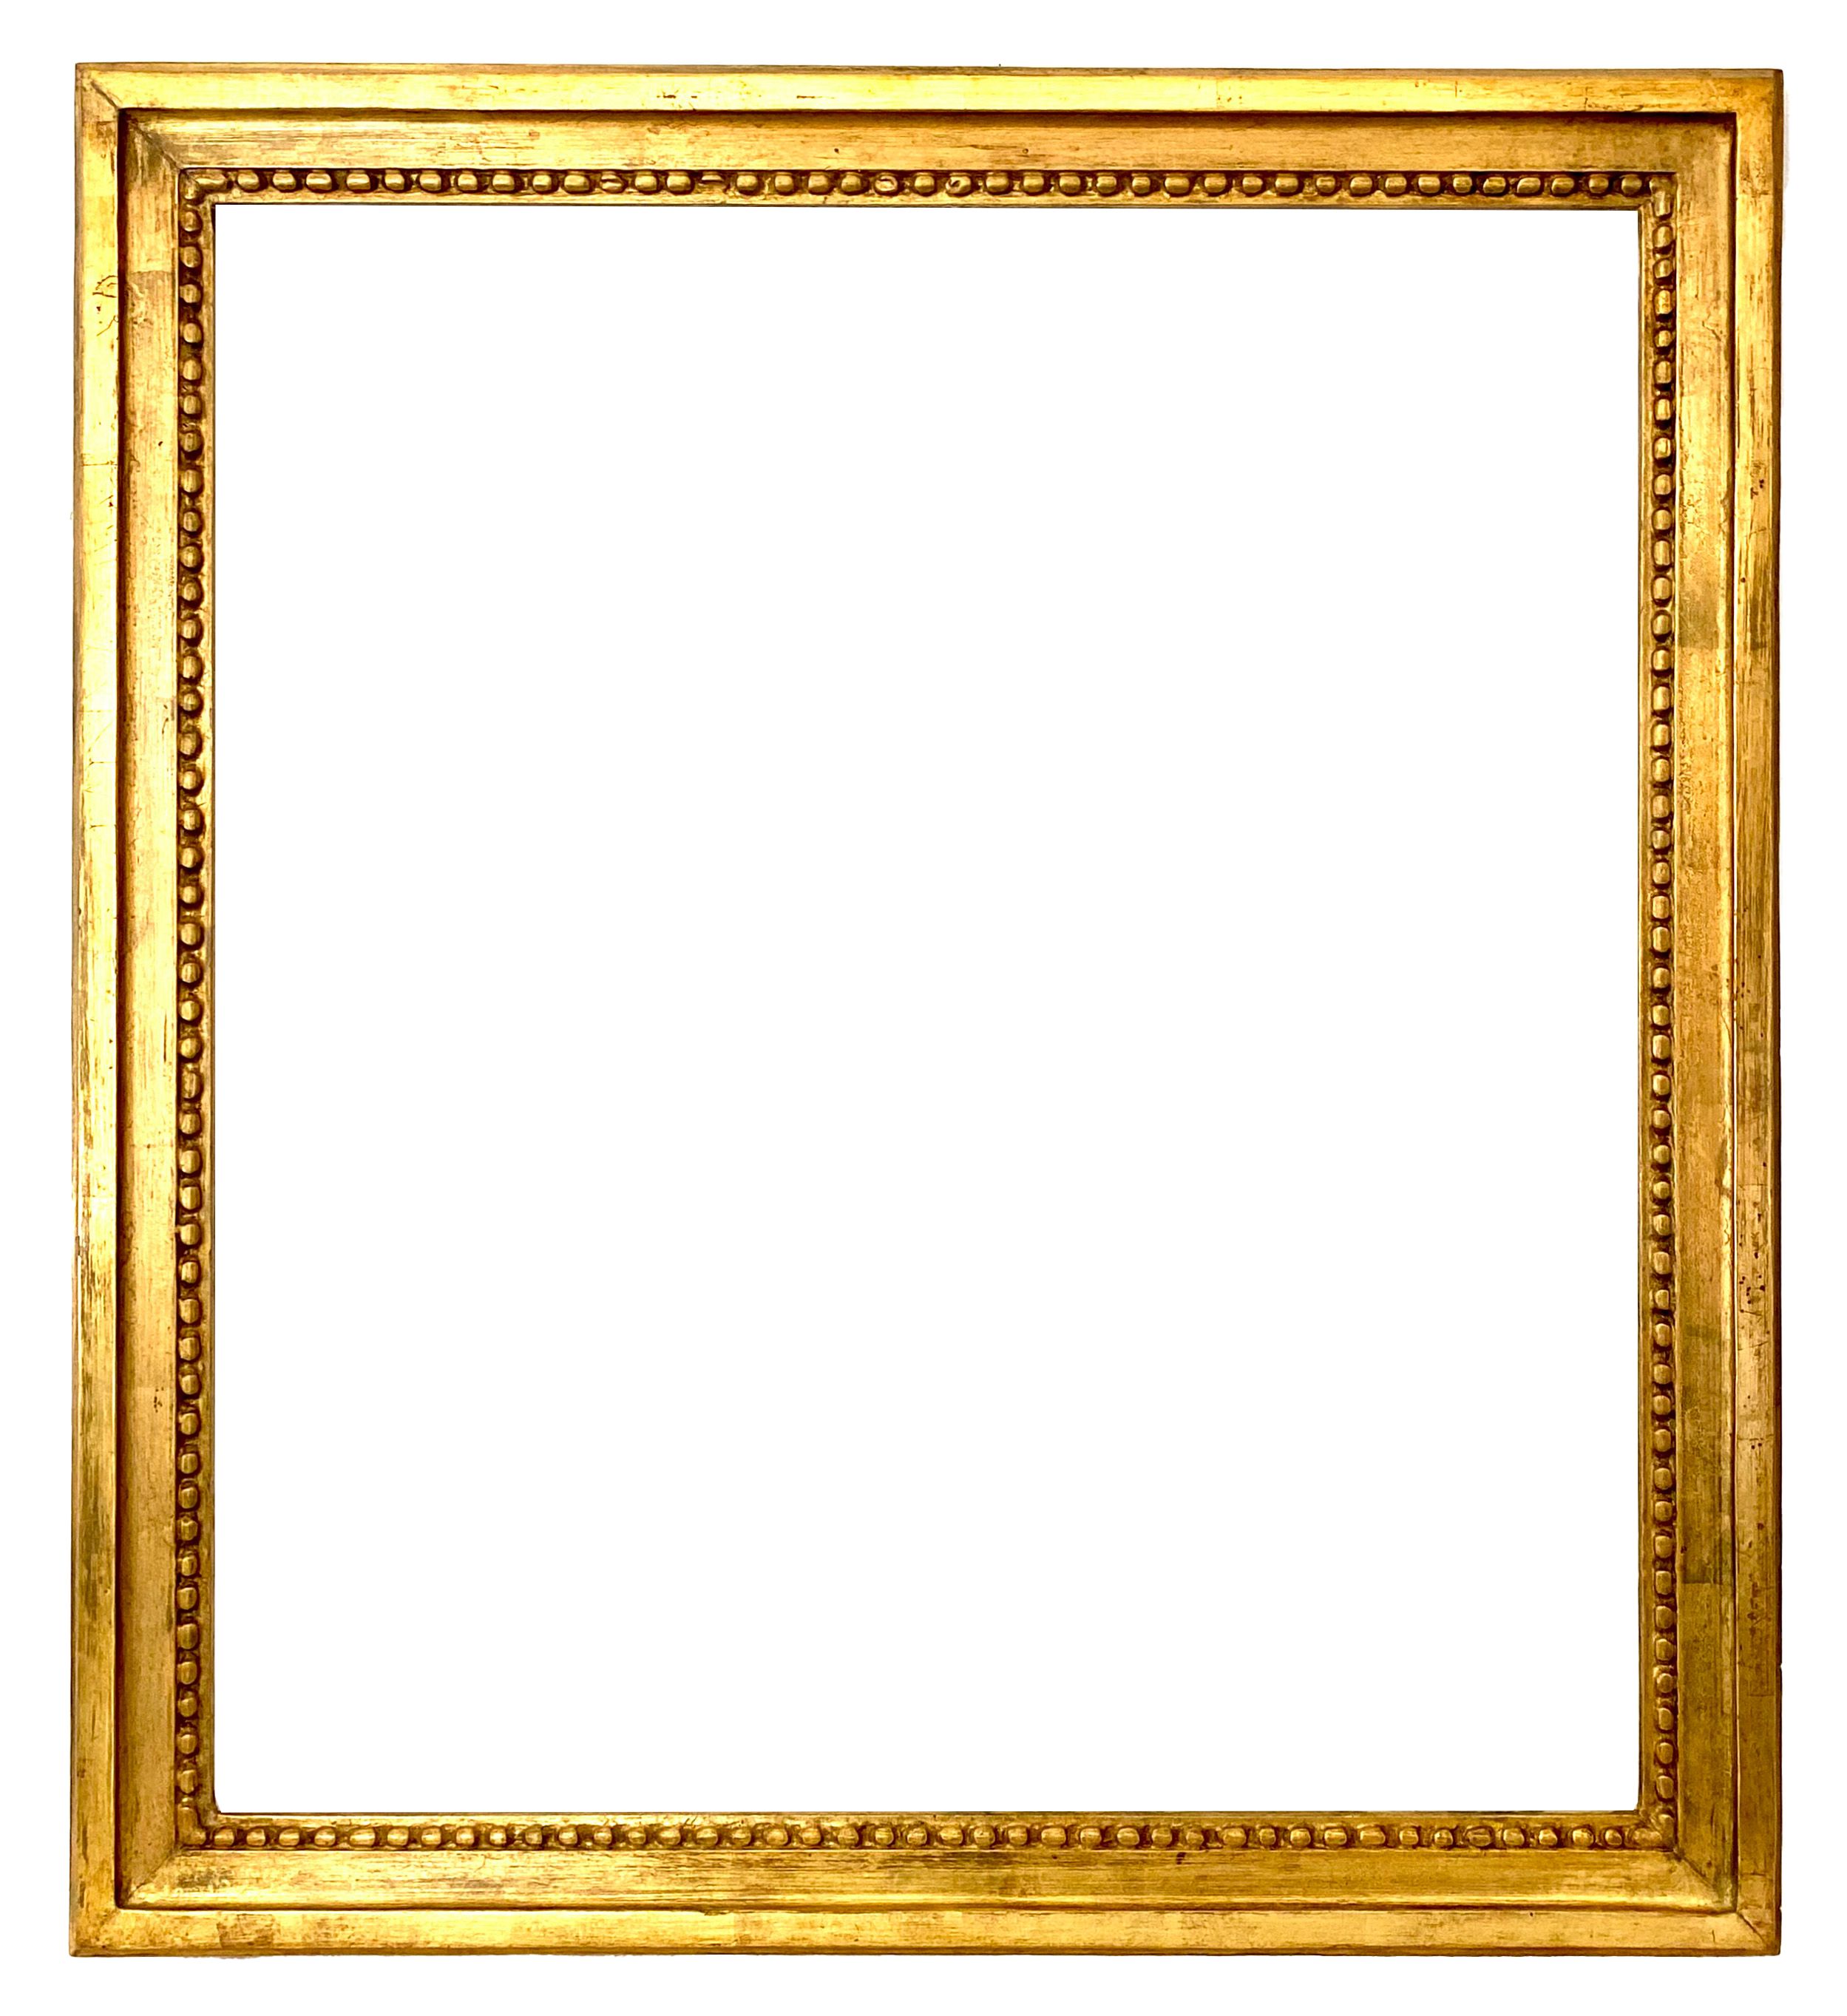 Cadre de style Louis XVI - 55,00 x 48,90 - REF - 642